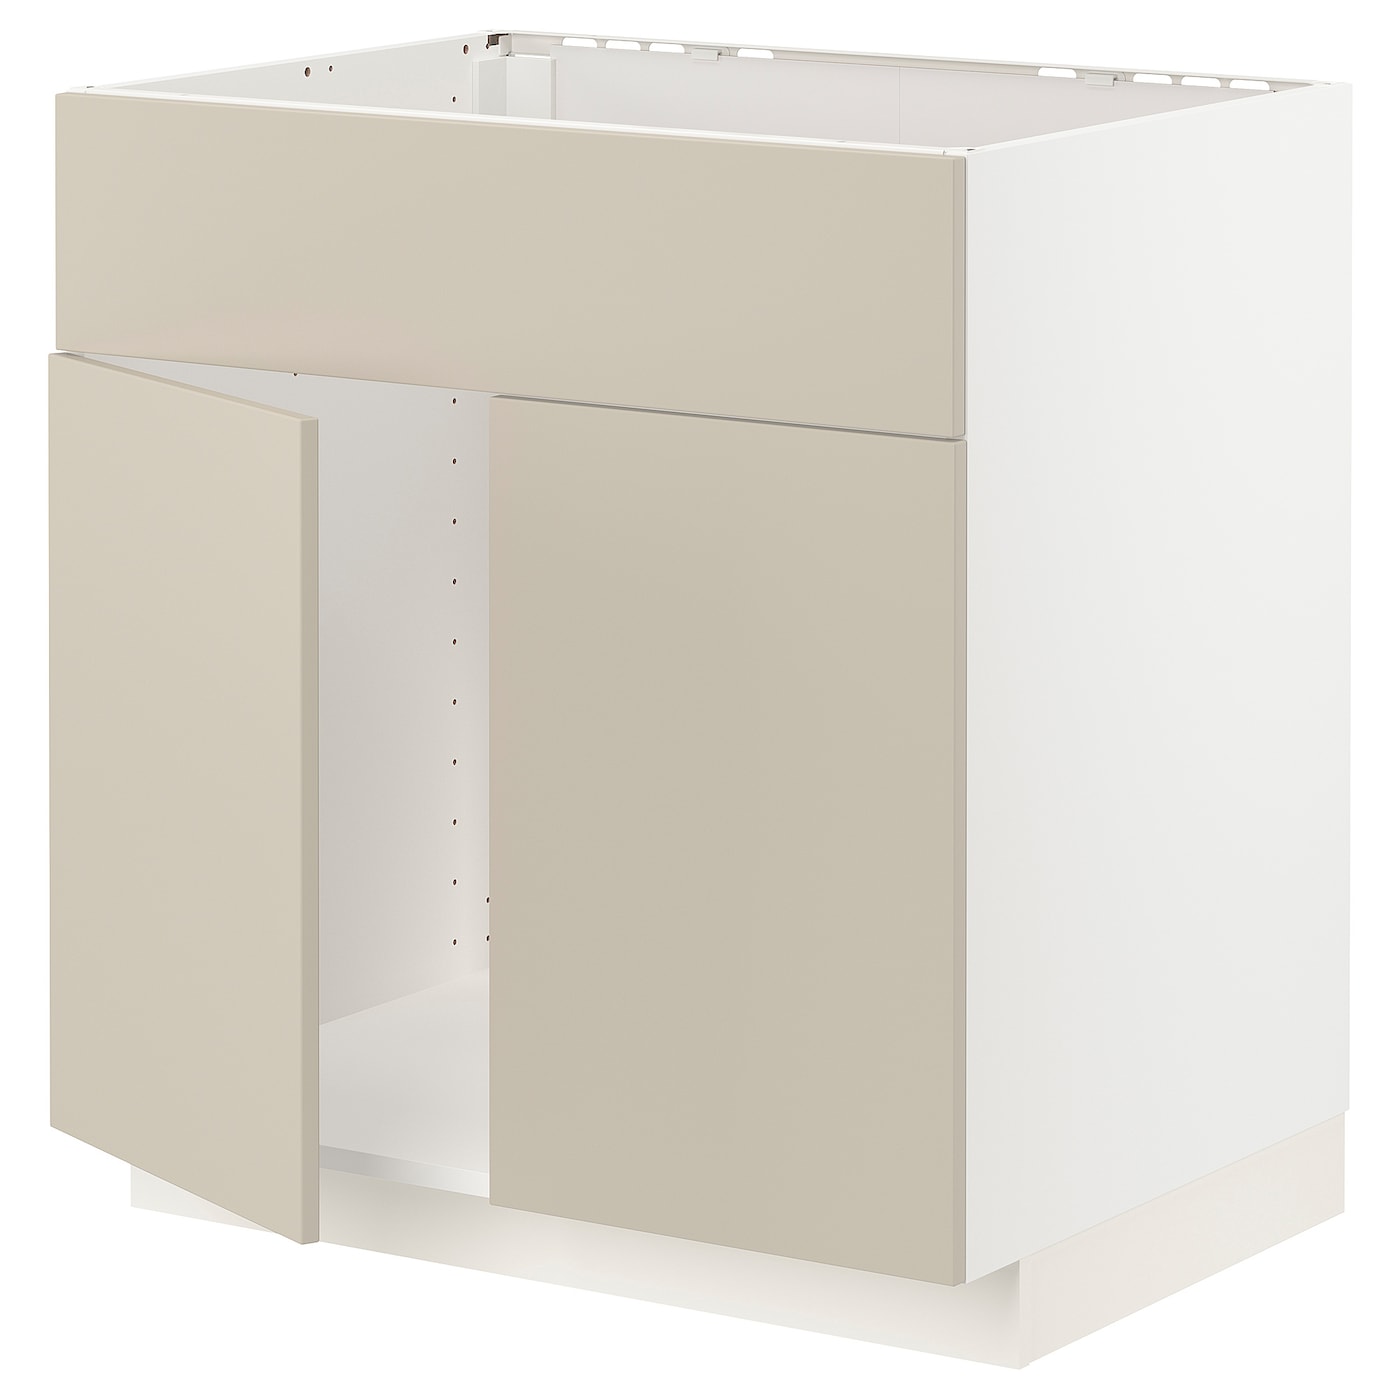 Напольный кухонный шкаф  - IKEA METOD, 88x62x80см, белый/бежевый, МЕТОД ИКЕА